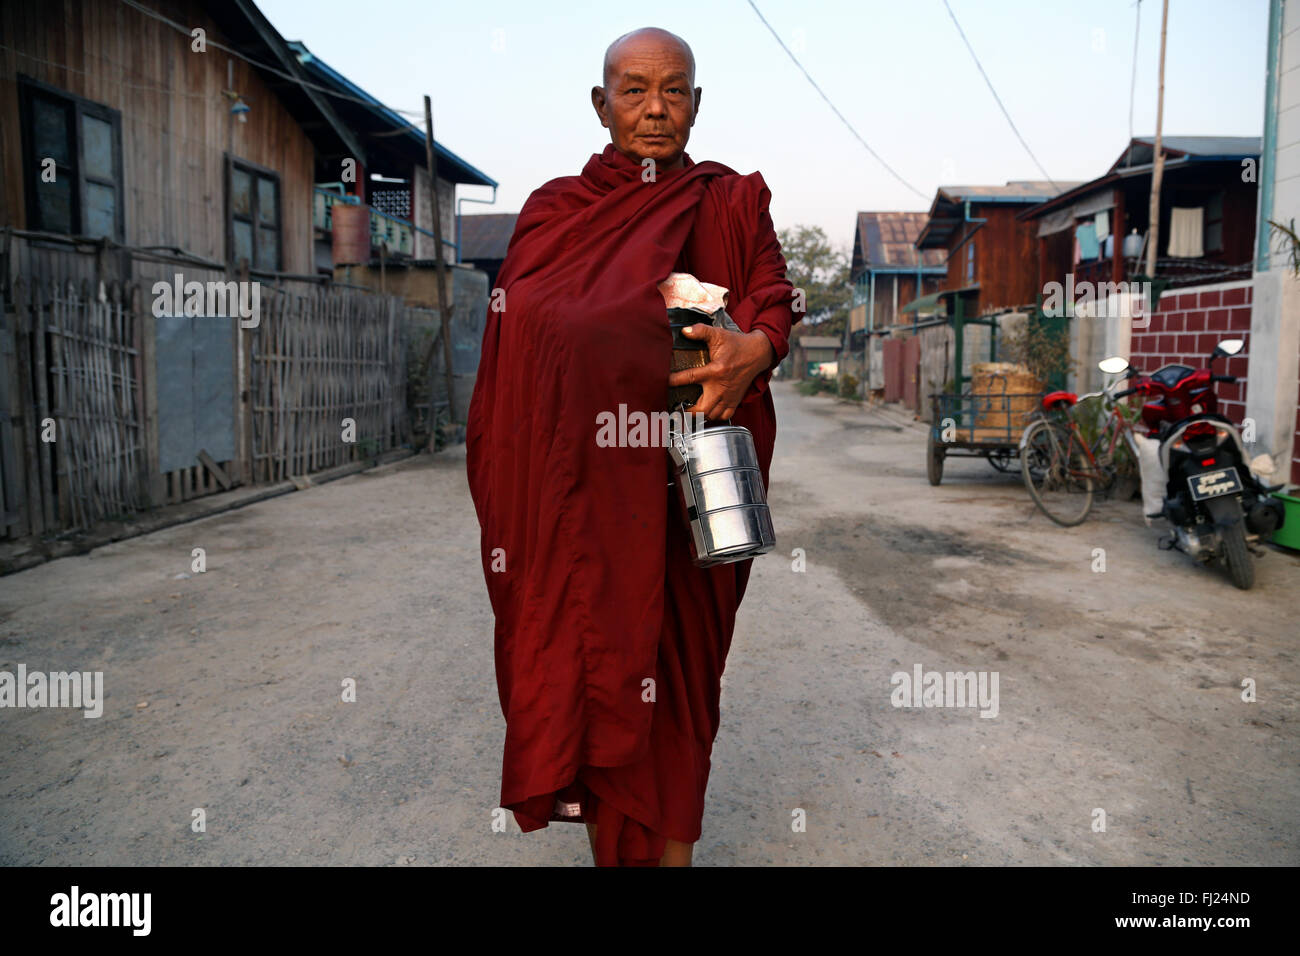 Portrait de moine bouddhiste dans une rue de Nyaung Shwe, Myanmar Banque D'Images